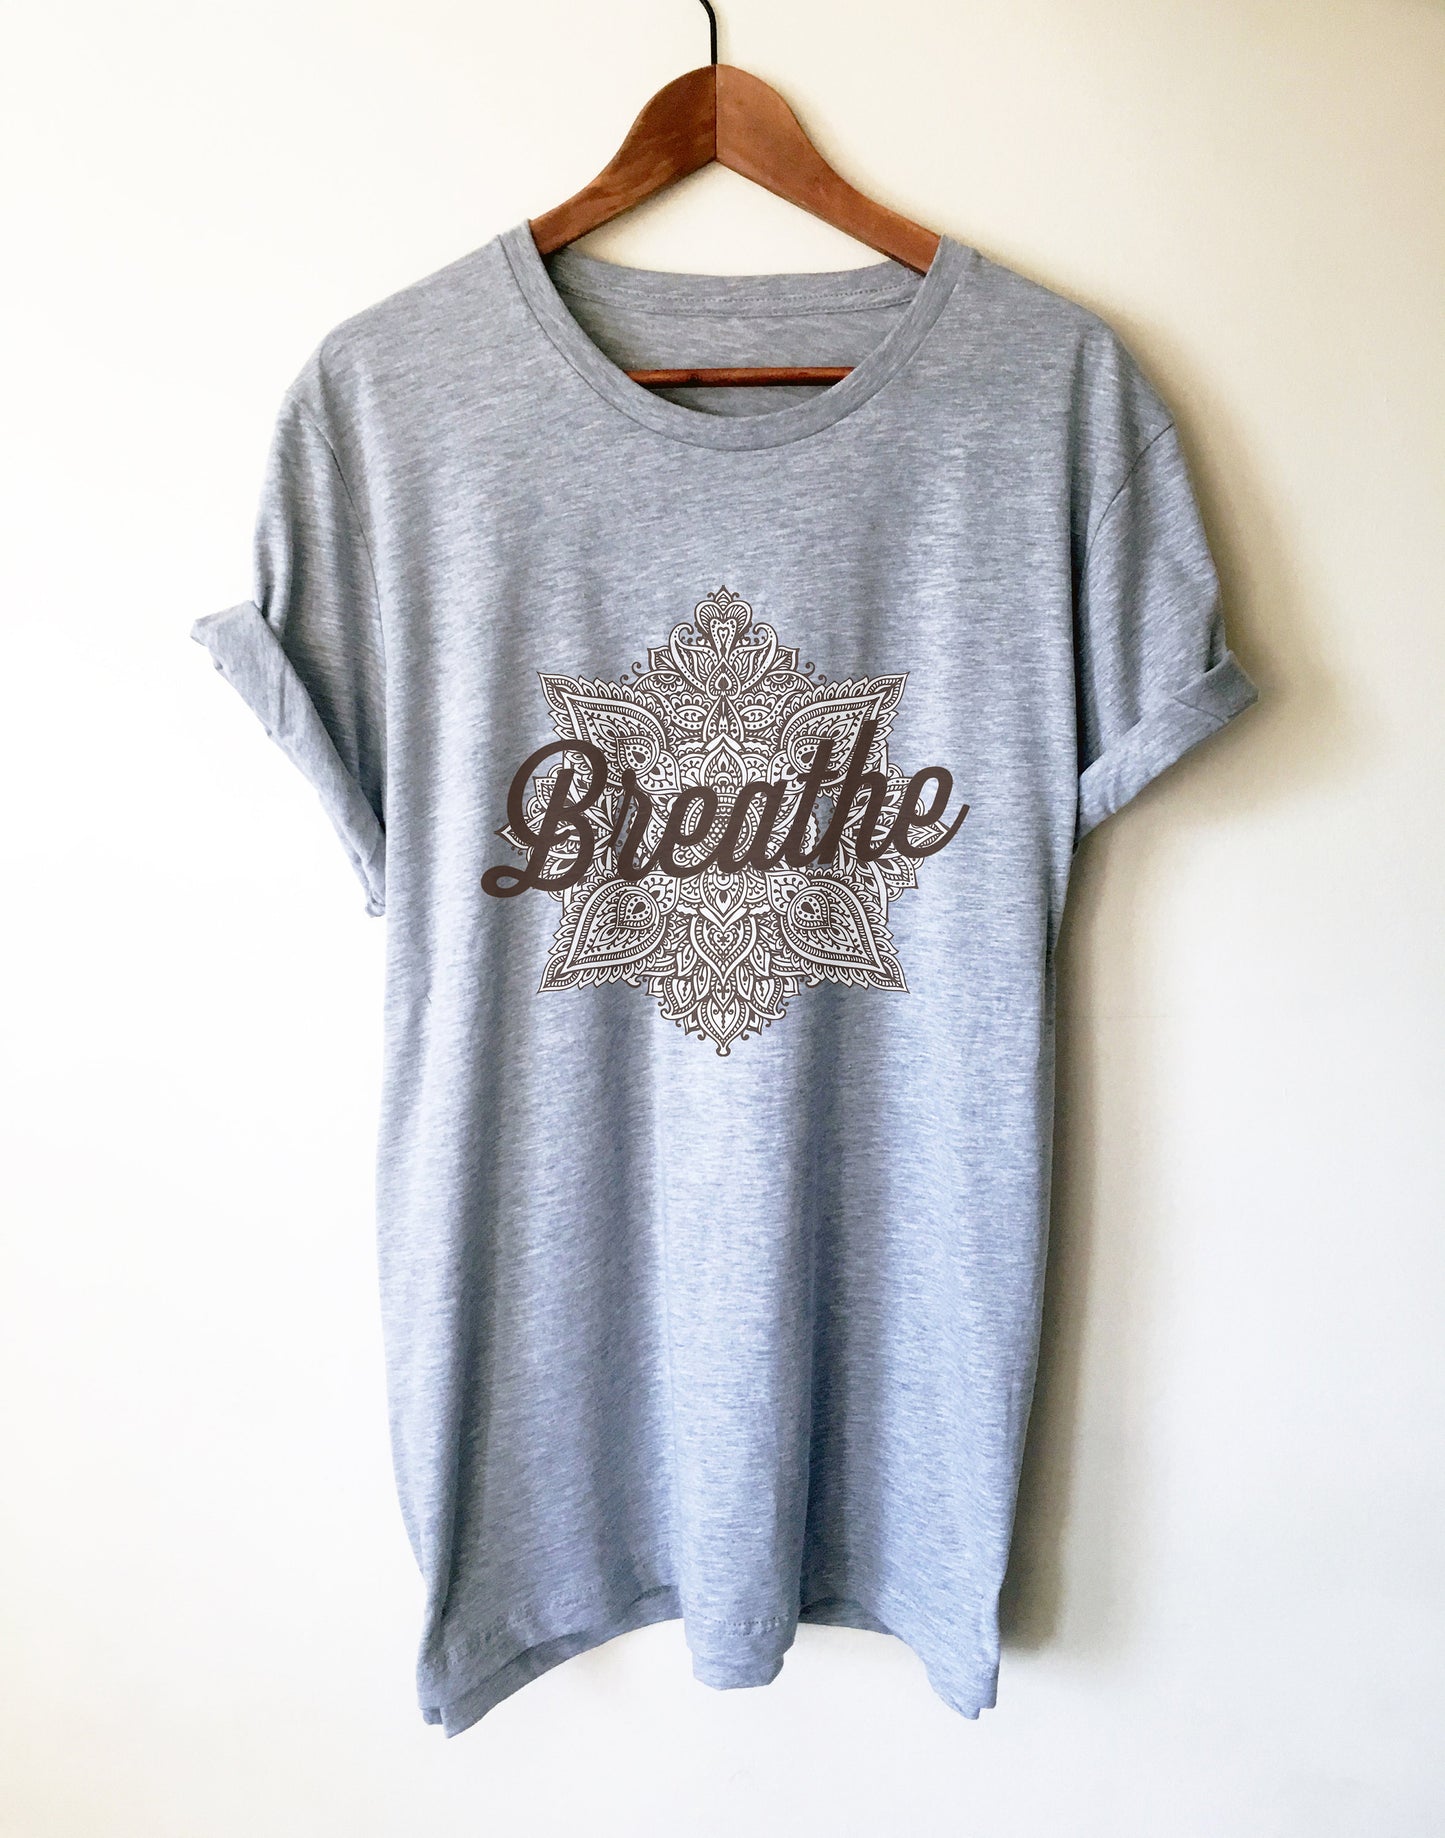 Breathe Unisex Shirt - Pilates Shirt, Pilates Gift, Mindful Shirt, Mindful Gift, Mindfulness Shirt, Mindfulness Gift